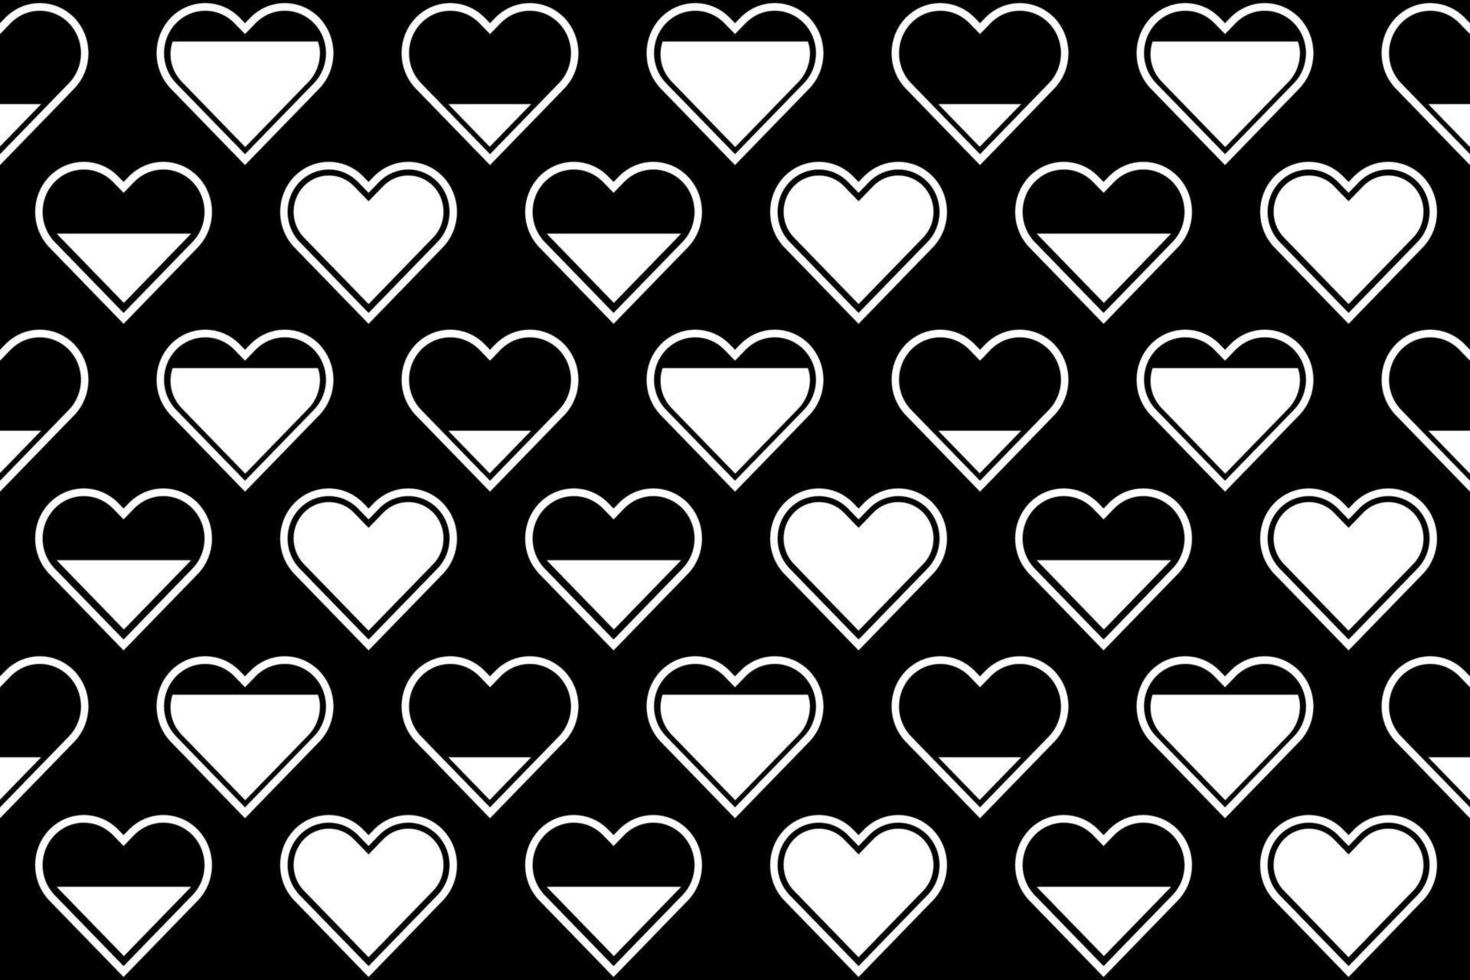 padrão de forma de coração preto e branco. monocromático sem costura, repetindo o padrão com corações cheios e vazios. vetor